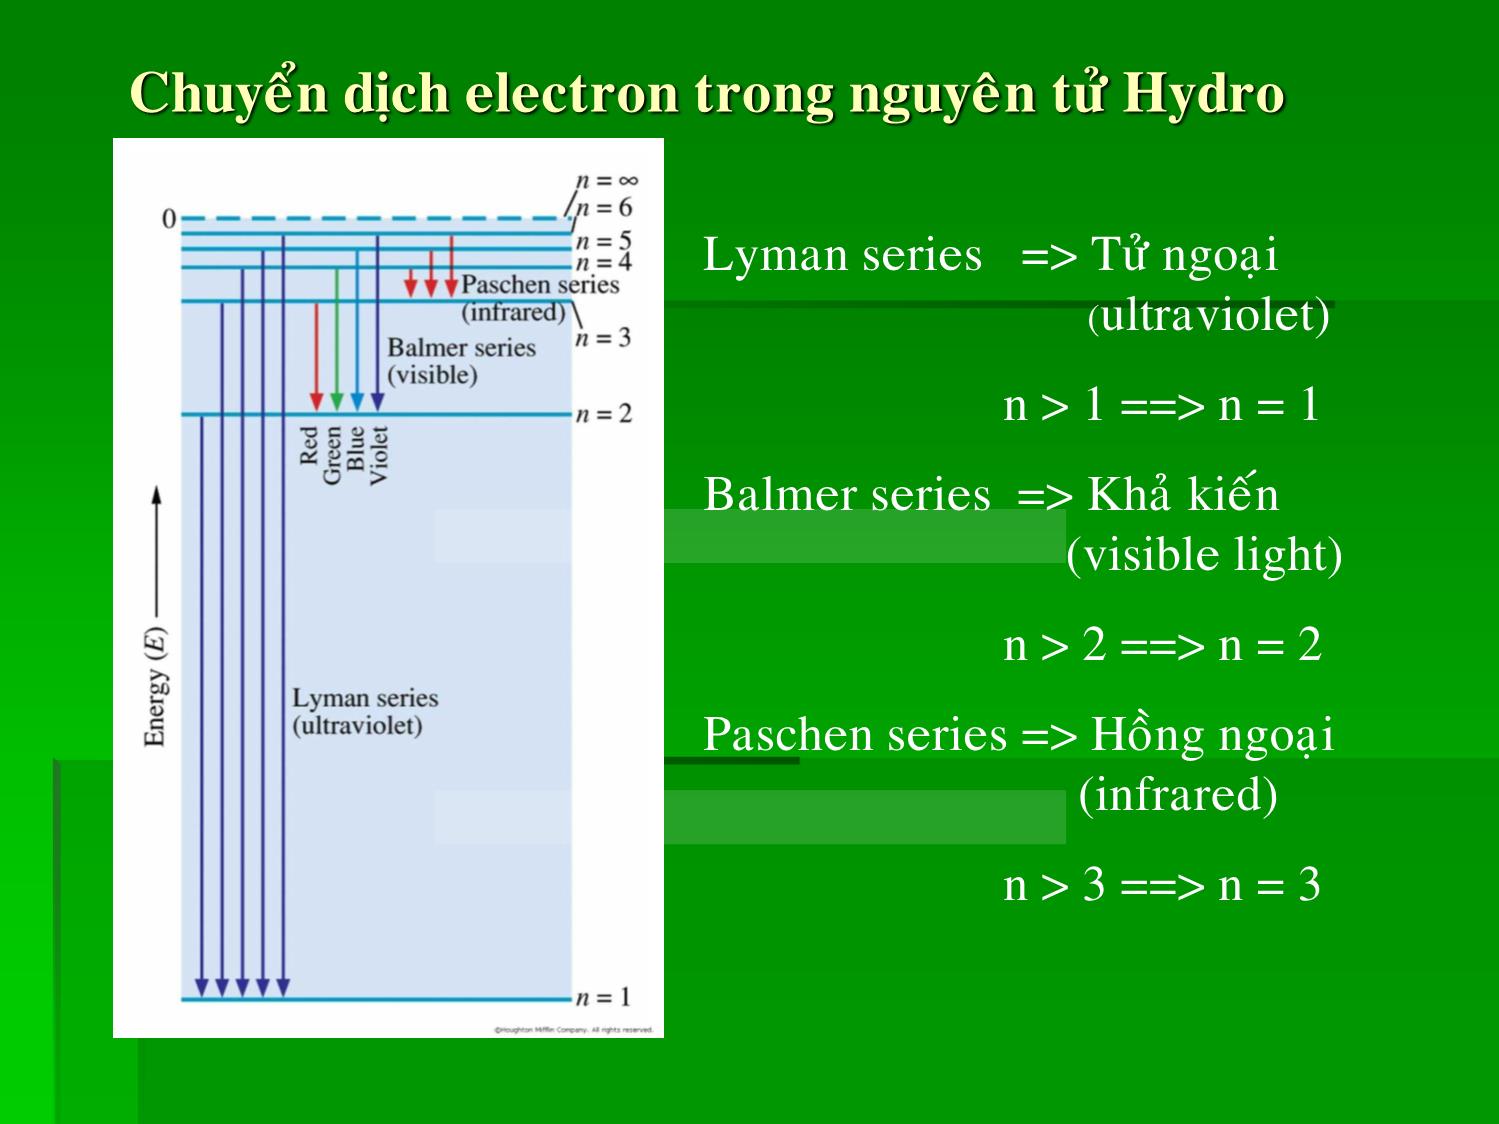 Bài giảng Hóa đại cương - Chương 2: Nguyên tử và quang phổ nguyên tử - Huỳnh Kỳ Phương Hạ trang 3